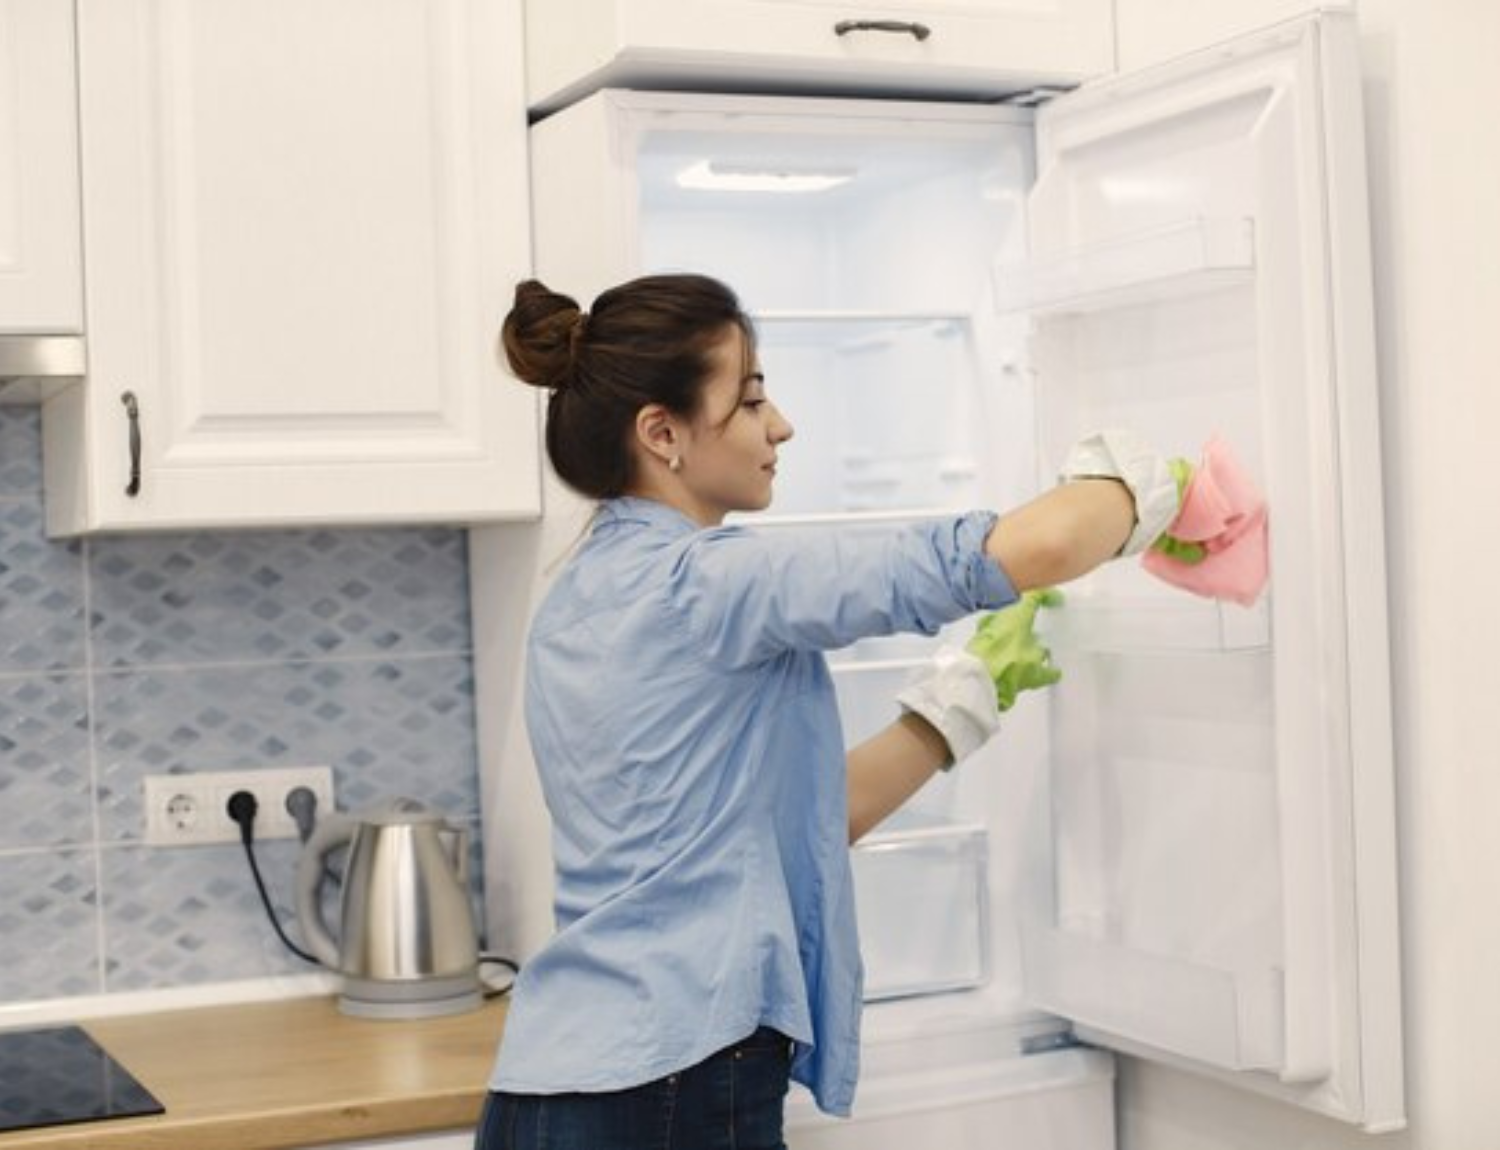 refrigerator cleaning essentials